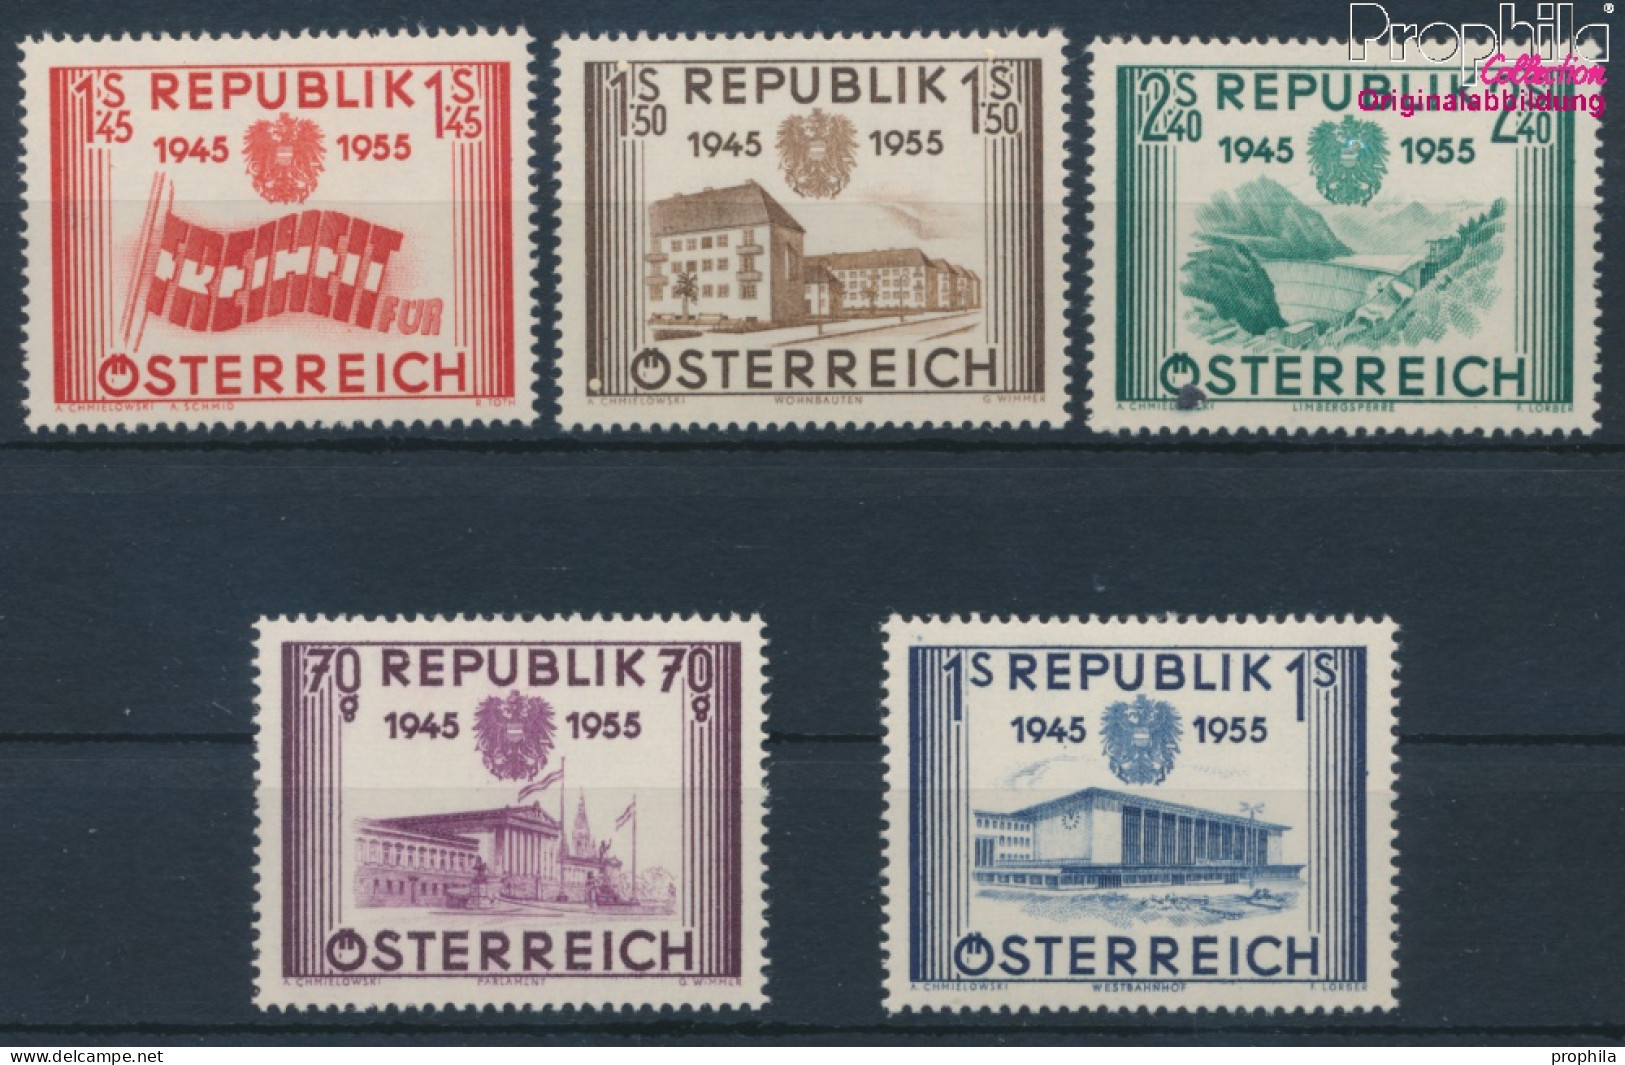 Österreich 1012-1016 (kompl.Ausg.) Postfrisch 1955 Unabhängigkeit (10405426 - Nuevos